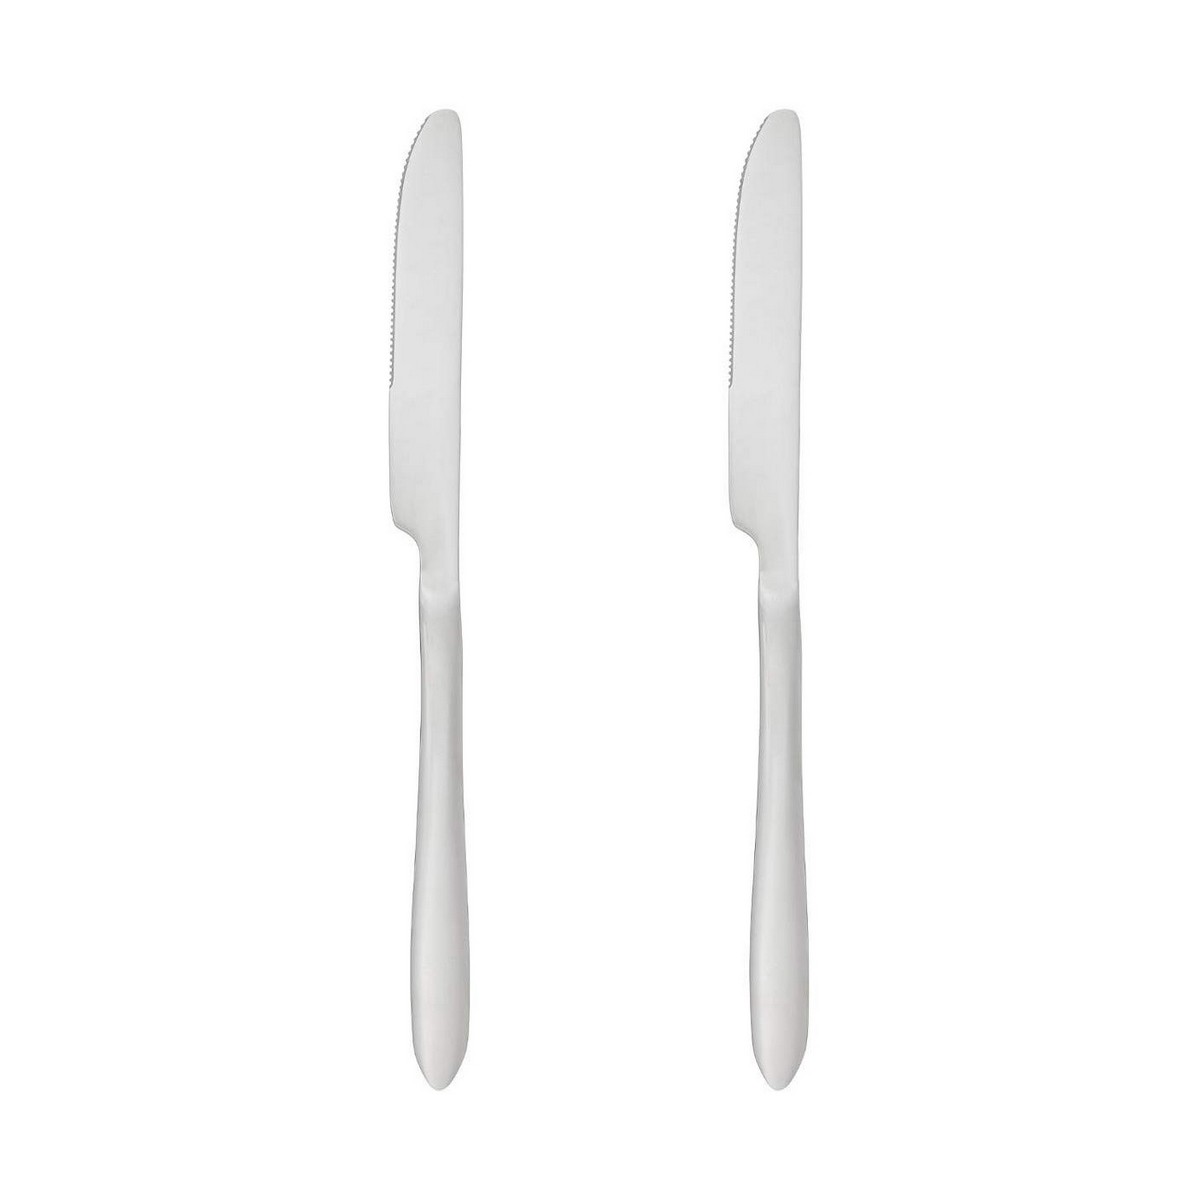 Table knife Secret de Gourmet Stainless steel 24 cm 2 Pieces